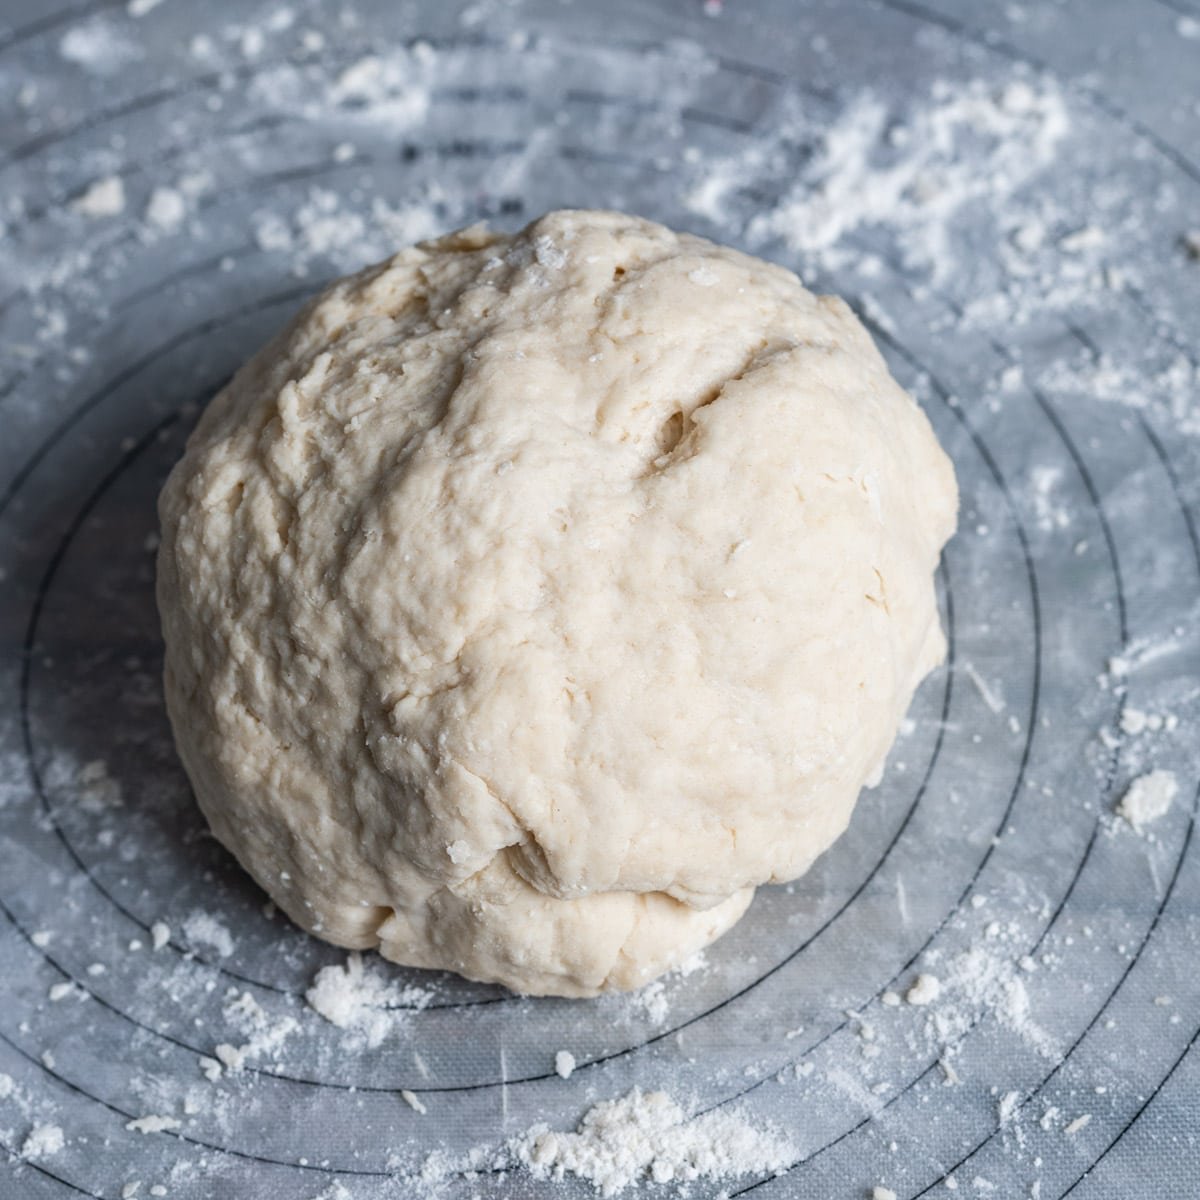 a ball of tortilla dough